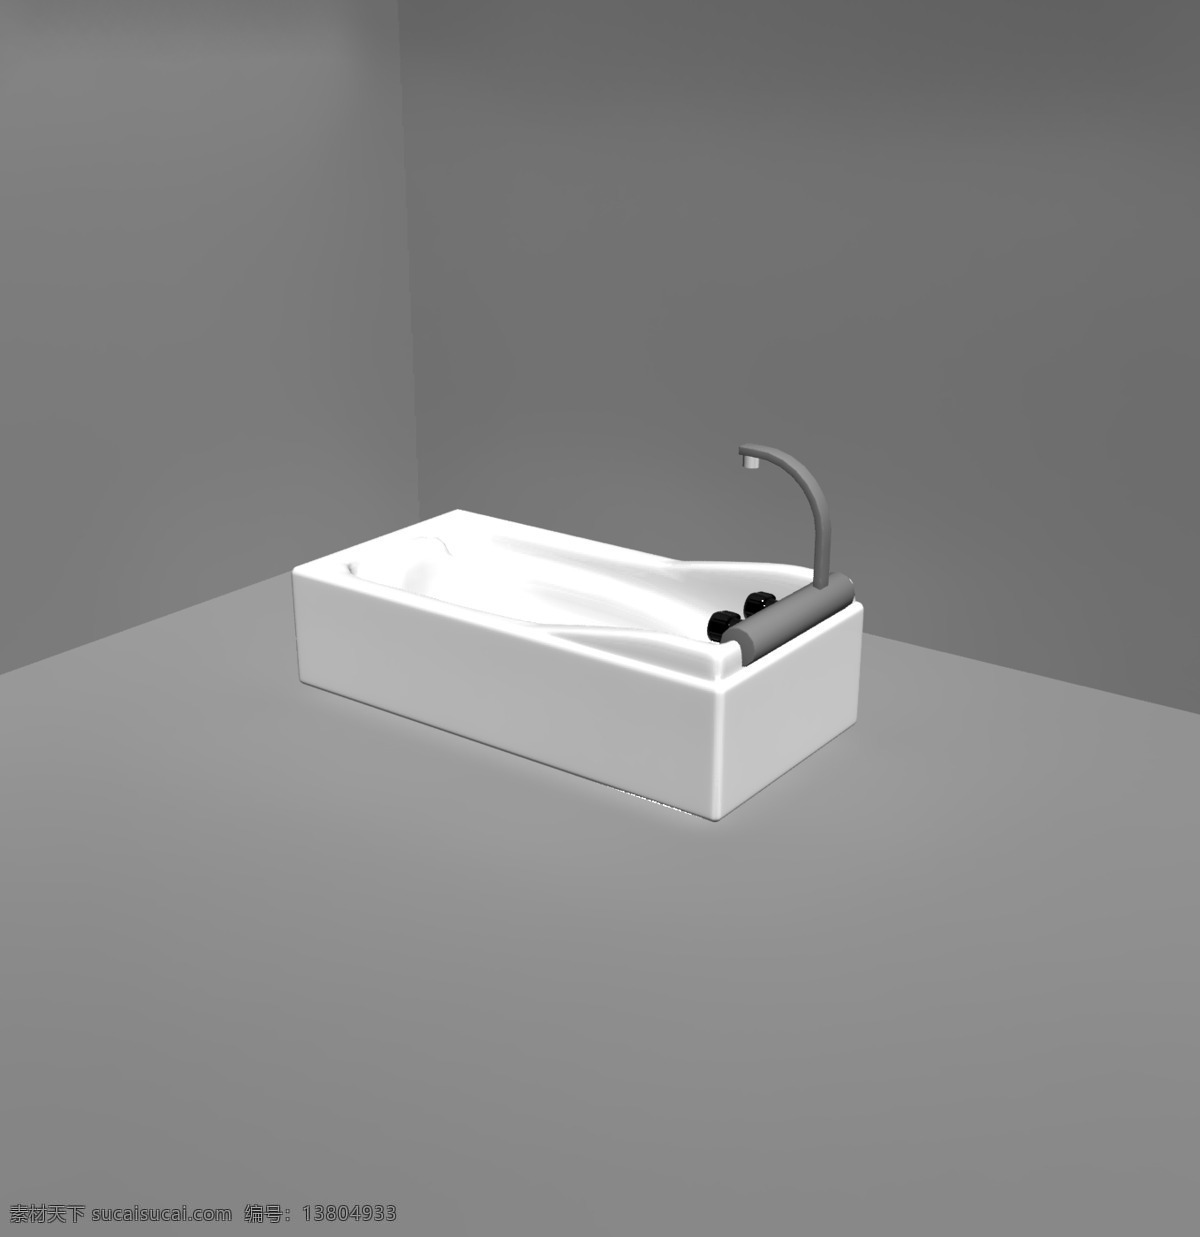 浴缸 简易 陶瓷 极 简洁 风格 个人 生活浴缸